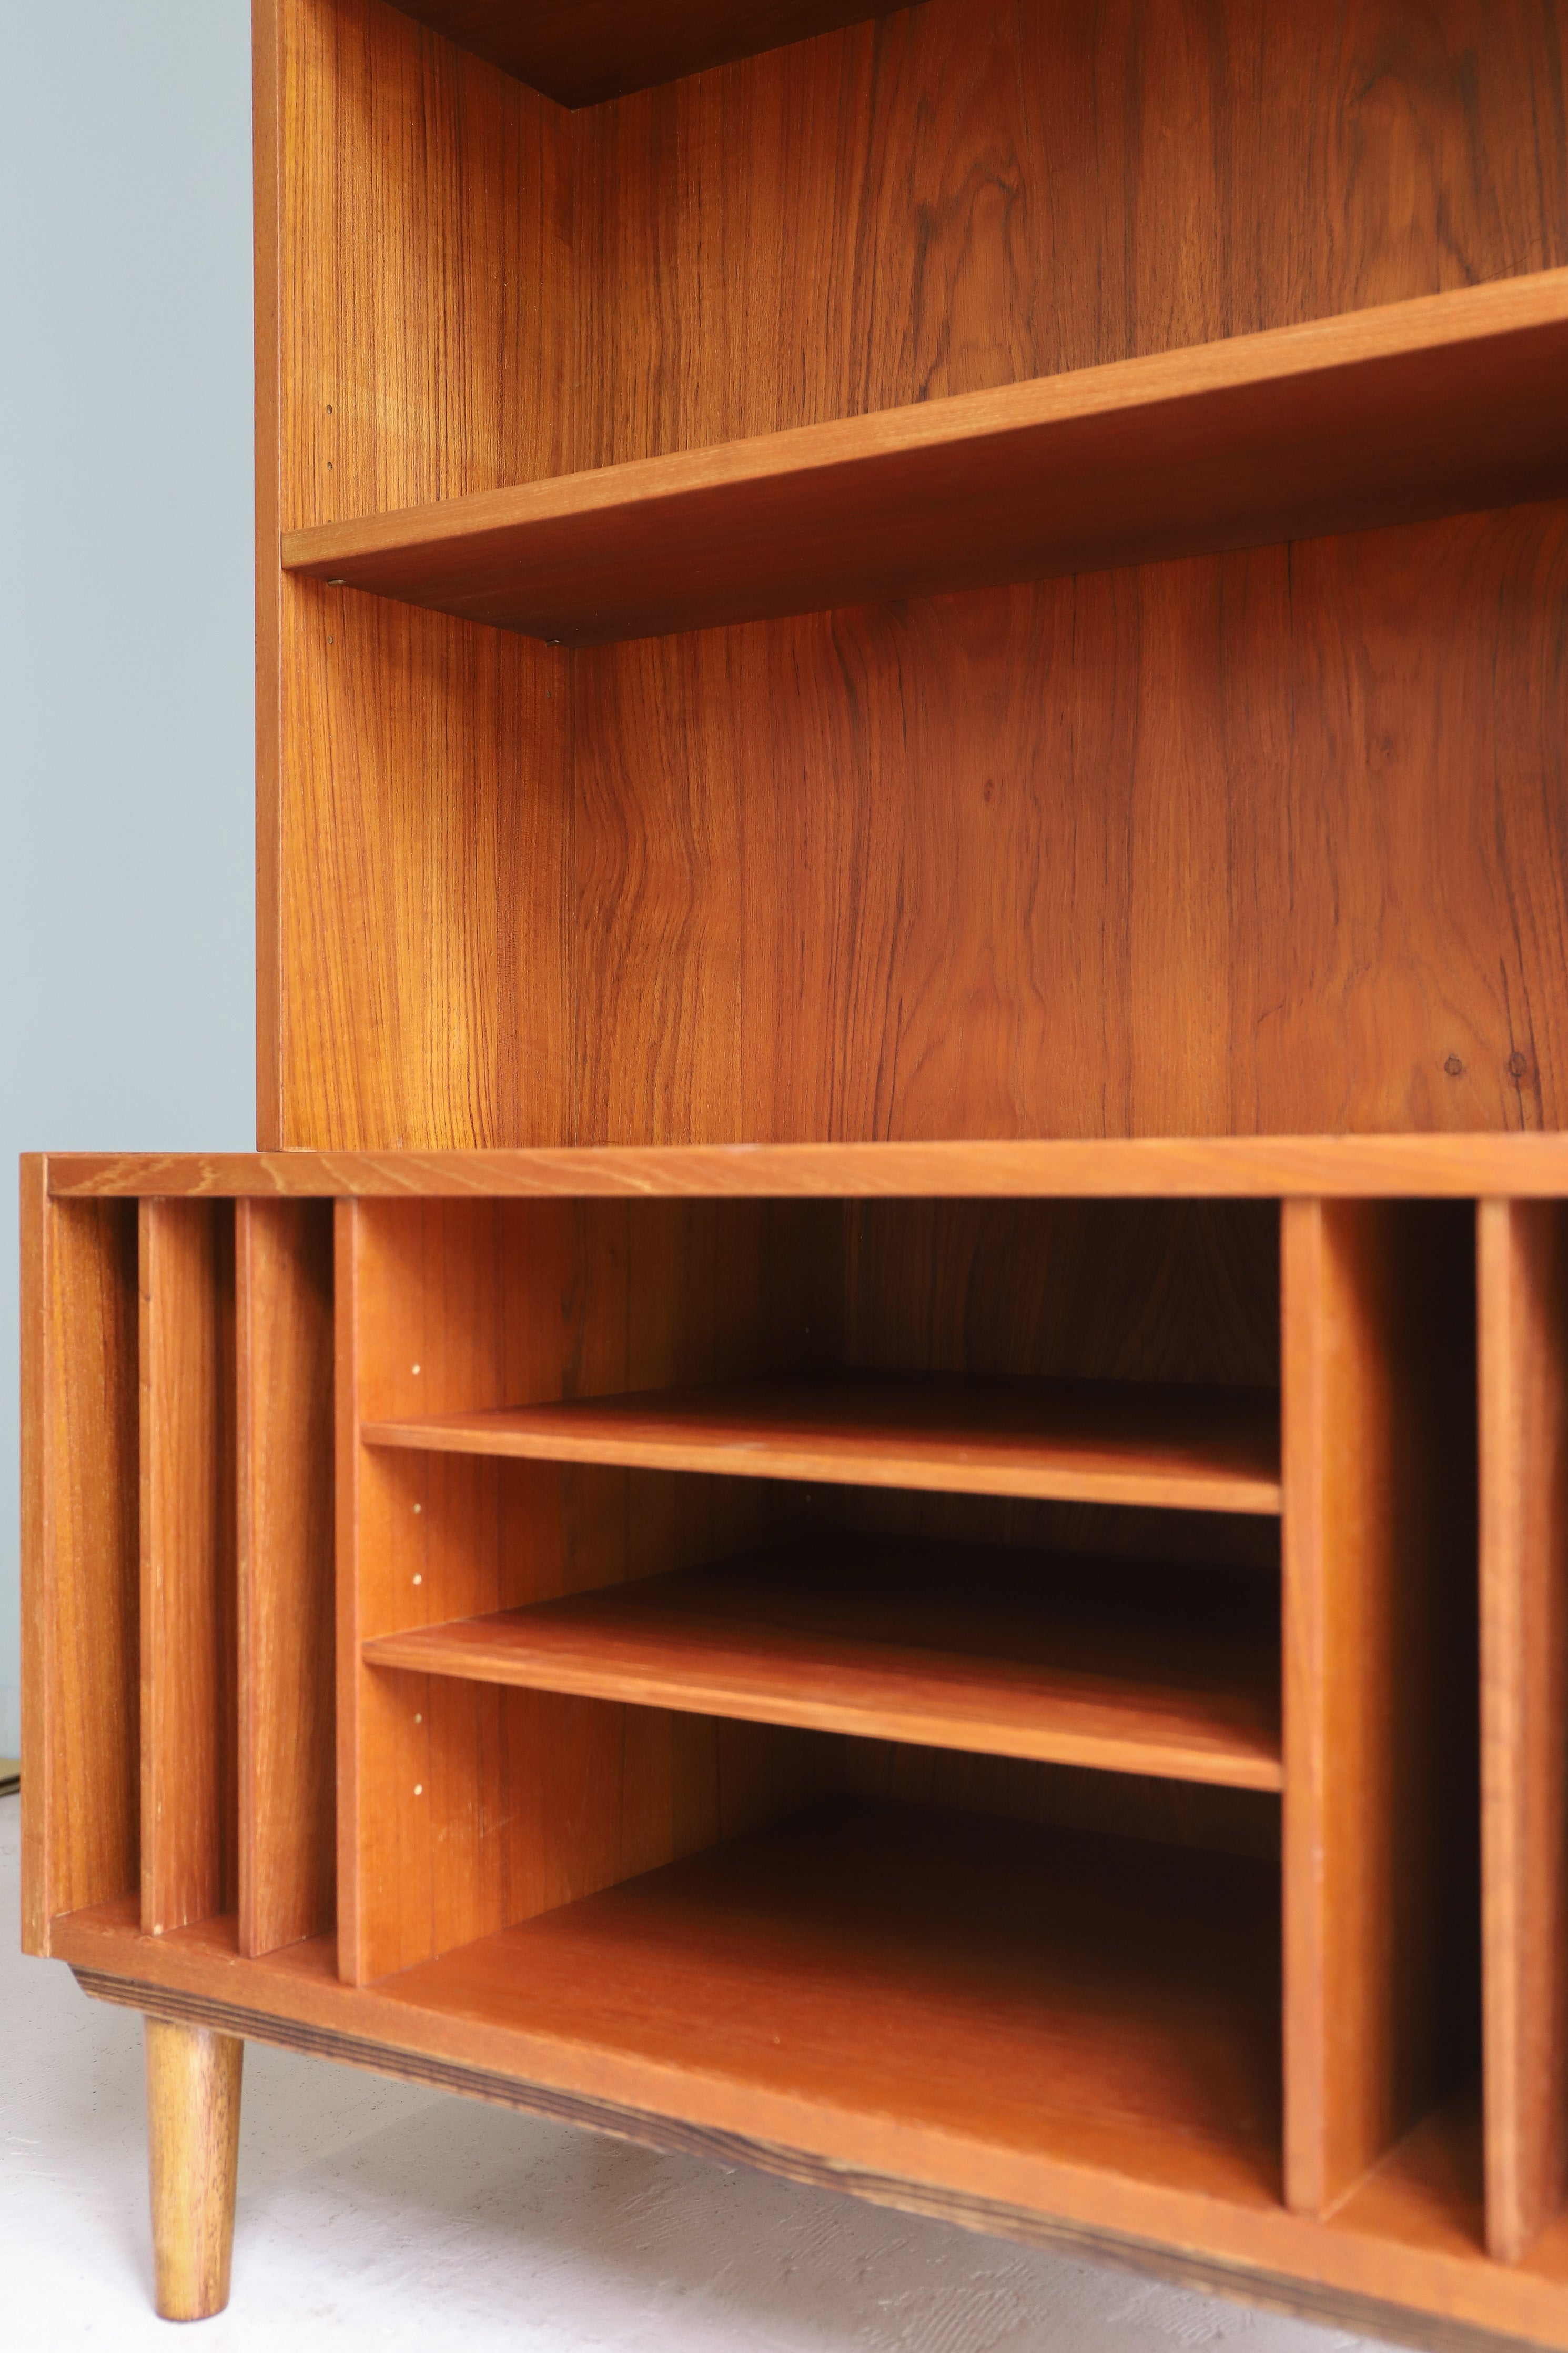 デンマークヴィンテージ ブックケース レコードシェルフ 本棚 チーク材 収納 北欧家具/Bookcase Record Shelf Danish Vintage Teakwood